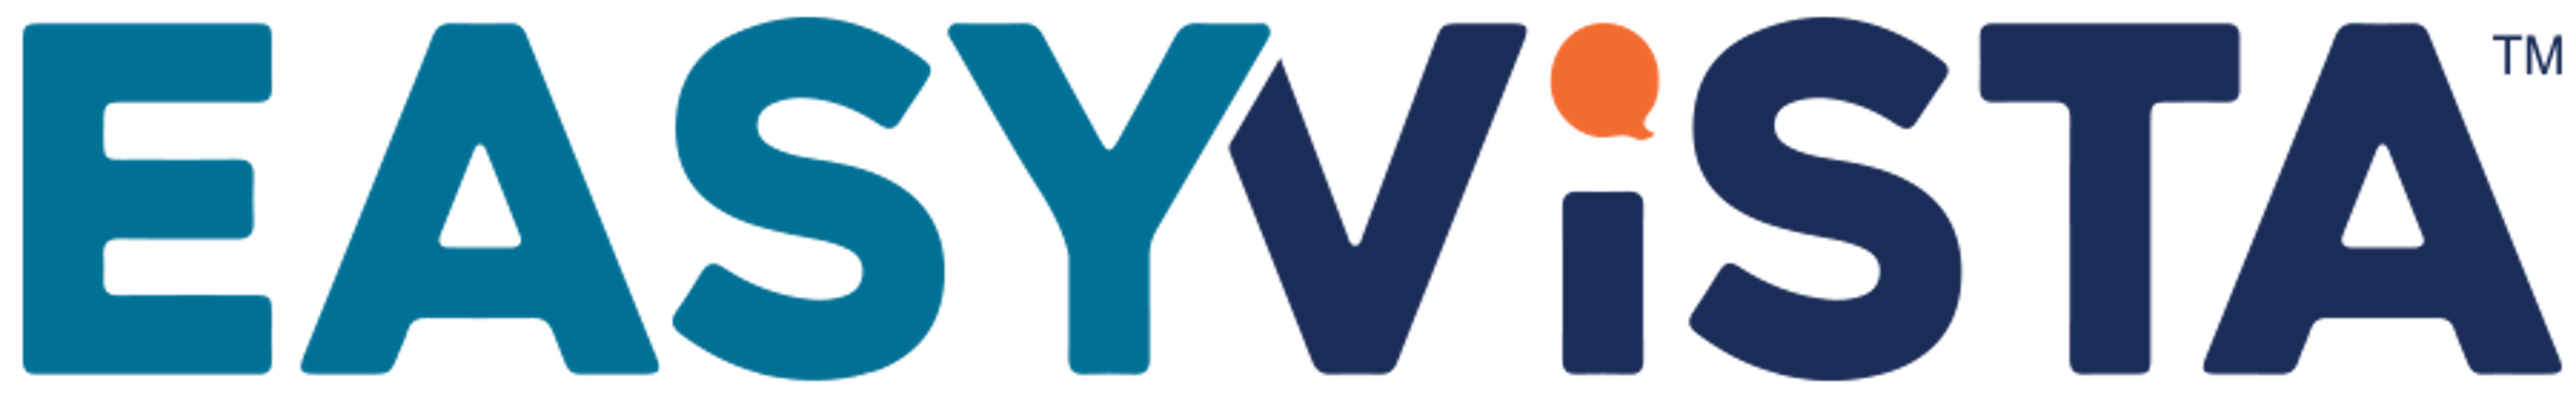 EV Service Manager Logo